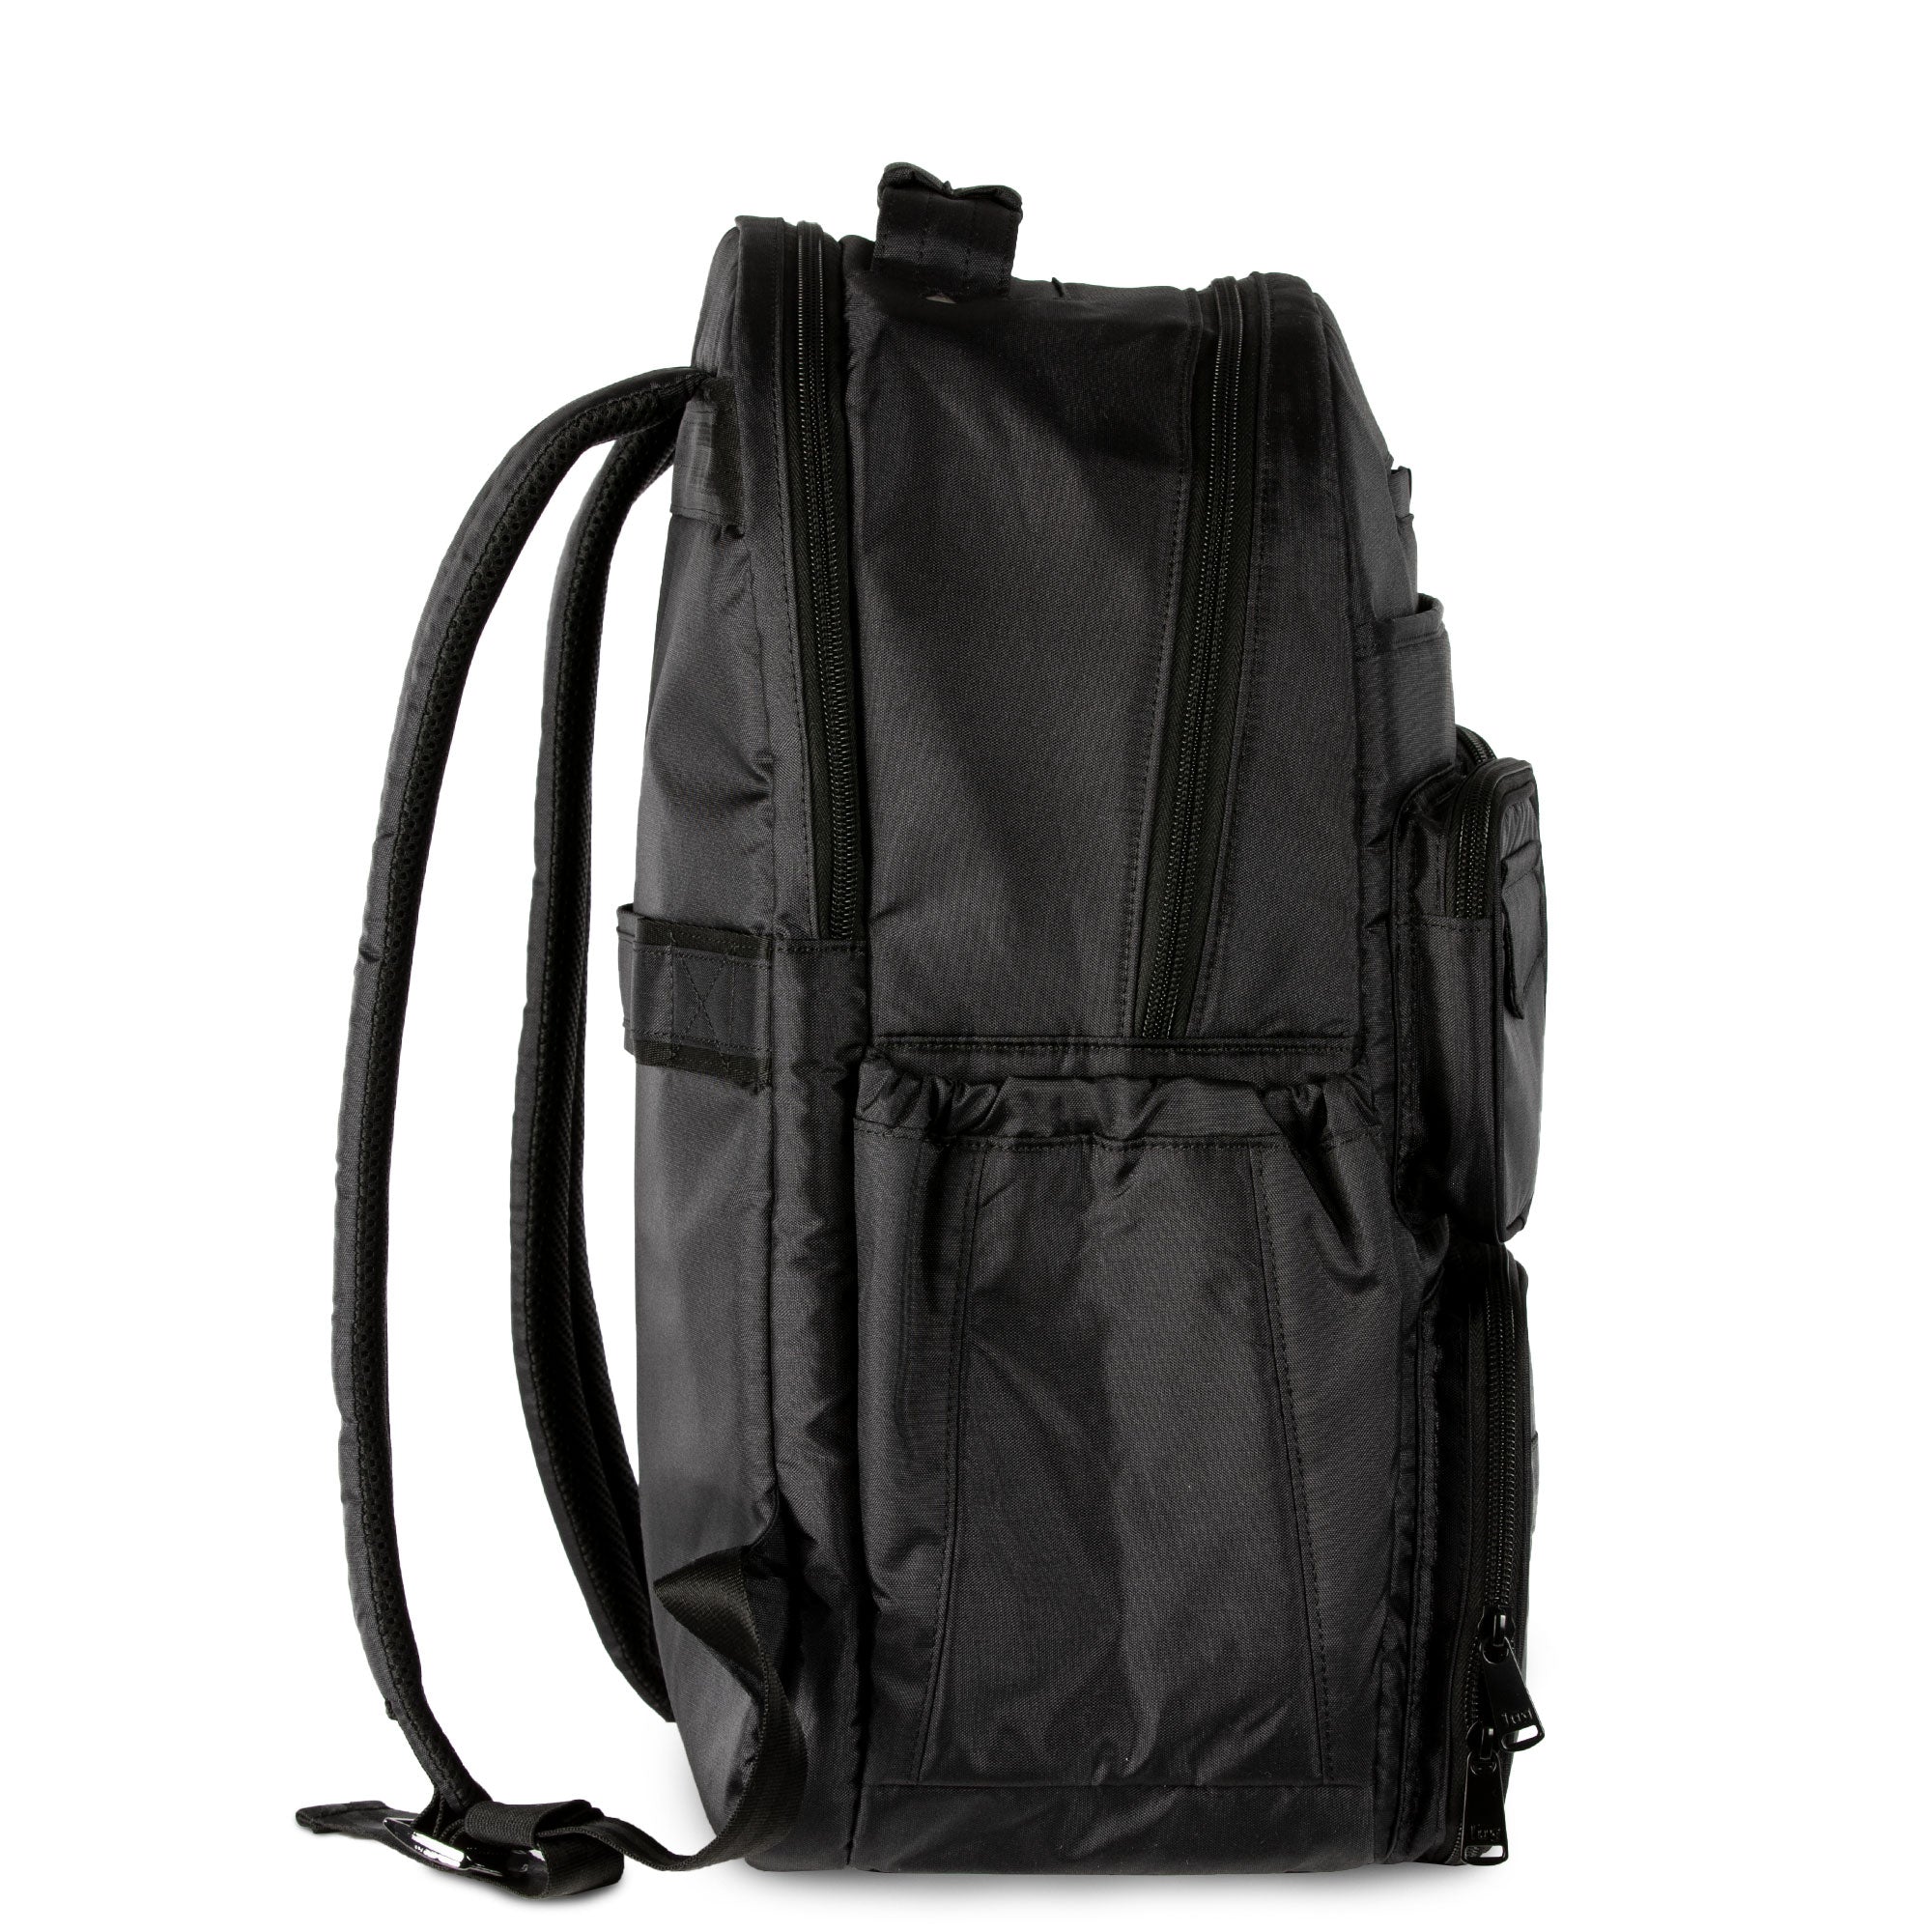 Puddle Jumper Backpack SE - Luglife.com